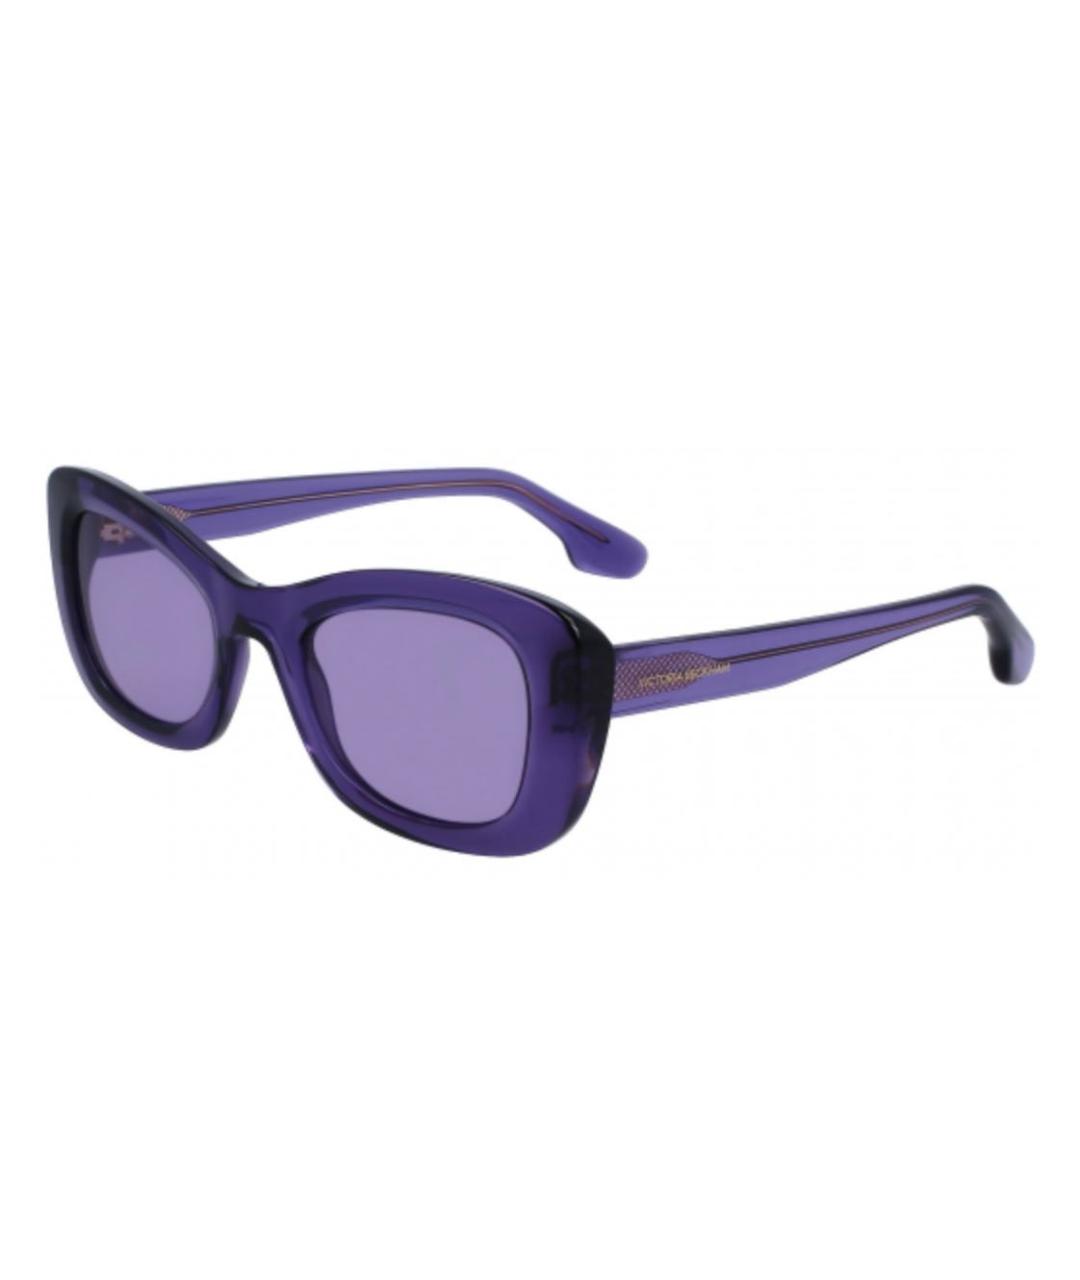 VICTORIA BECKHAM Фиолетовые пластиковые солнцезащитные очки, фото 1